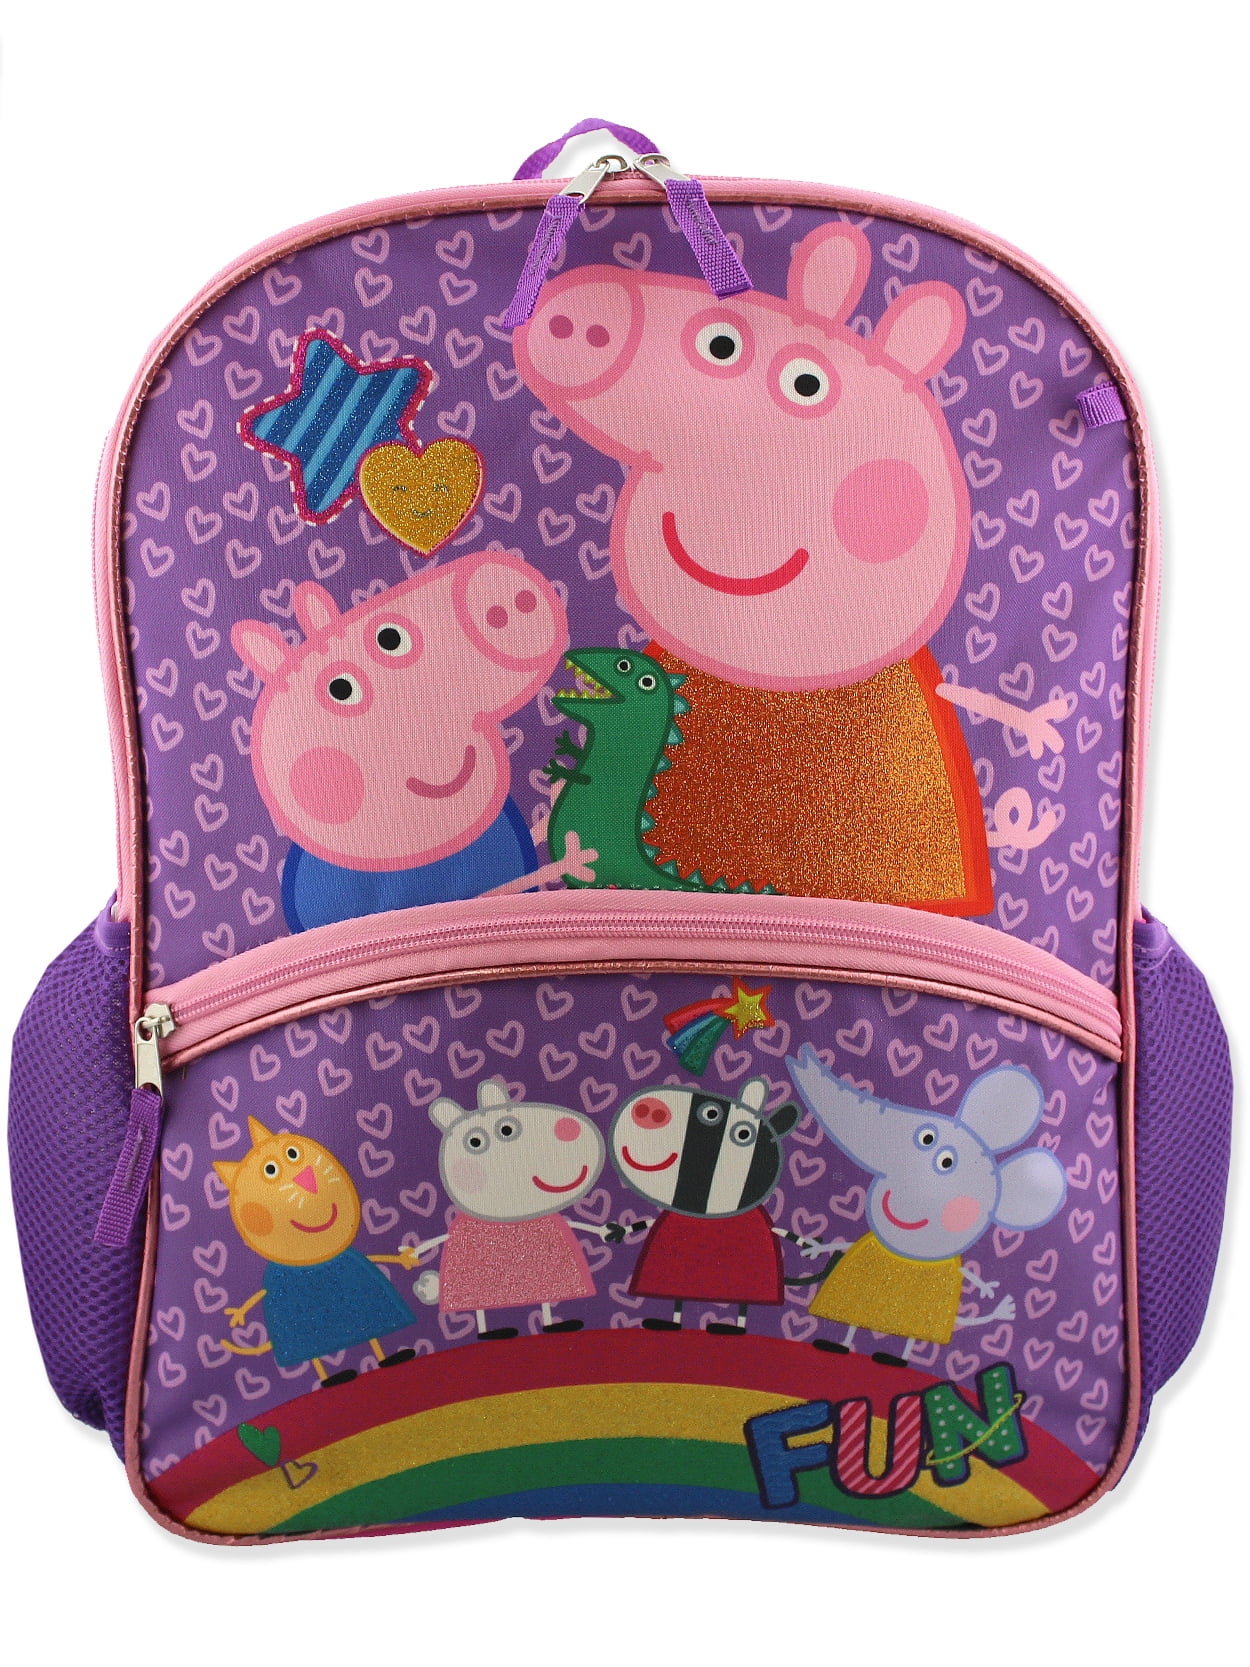 PEPPA PIG Backpack School Bag GEORGE New 